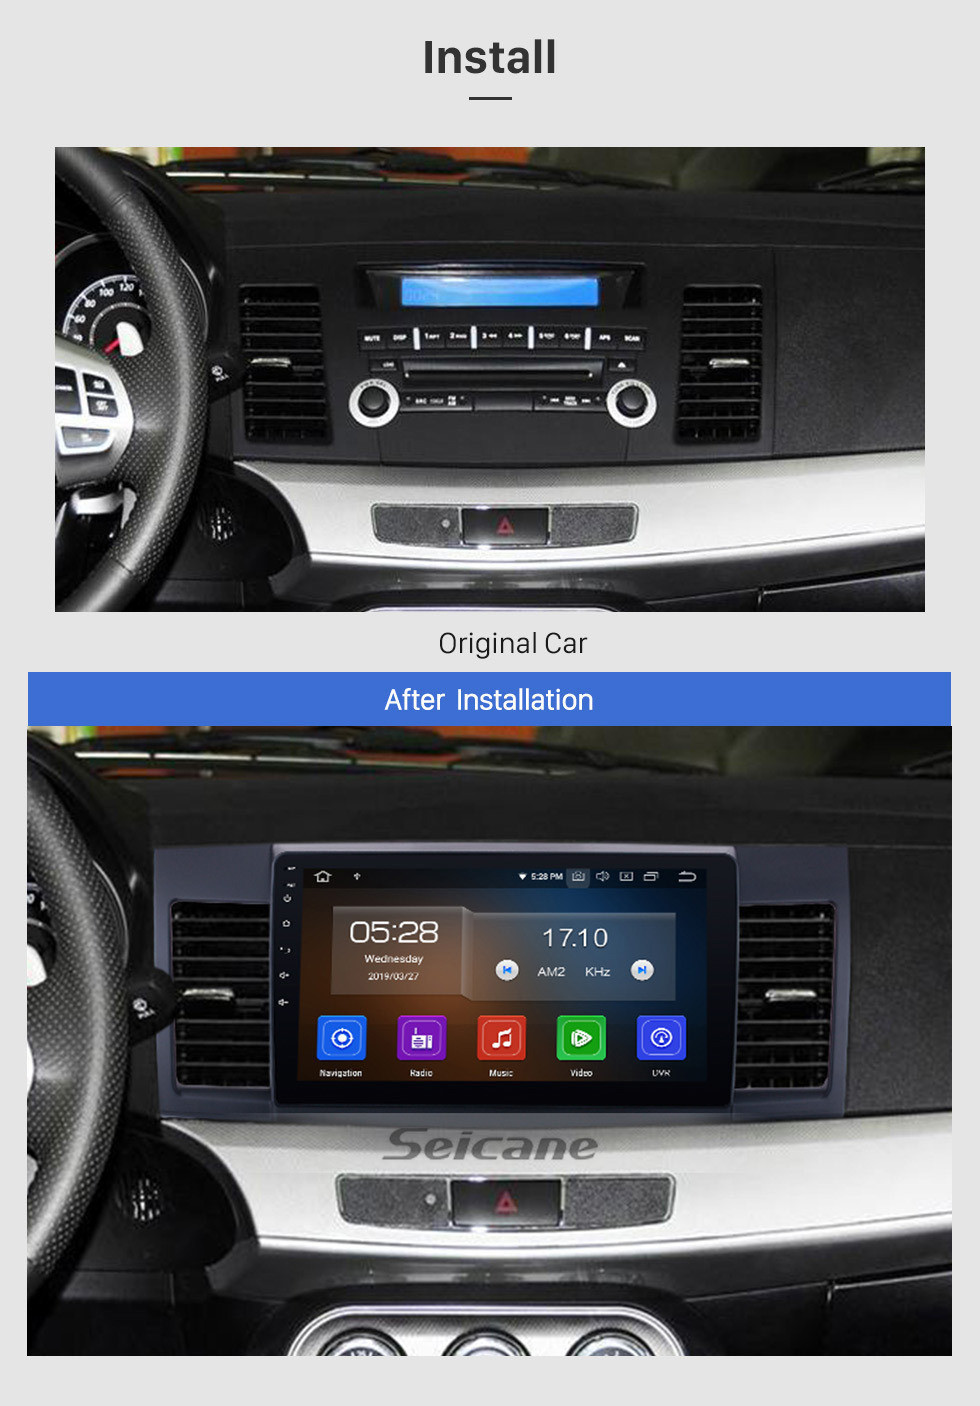 Seicane 2007-2015 Mitsubishi LANCER Android 12.0 Radio Lecteur DVD Système de navigation GPS Bluetooth HD 1024*600 Écran tactile Lien miroir OBD2 DVR Caméra de recul TV 1080P Vidéo 3G WIFI Commande au volant USB